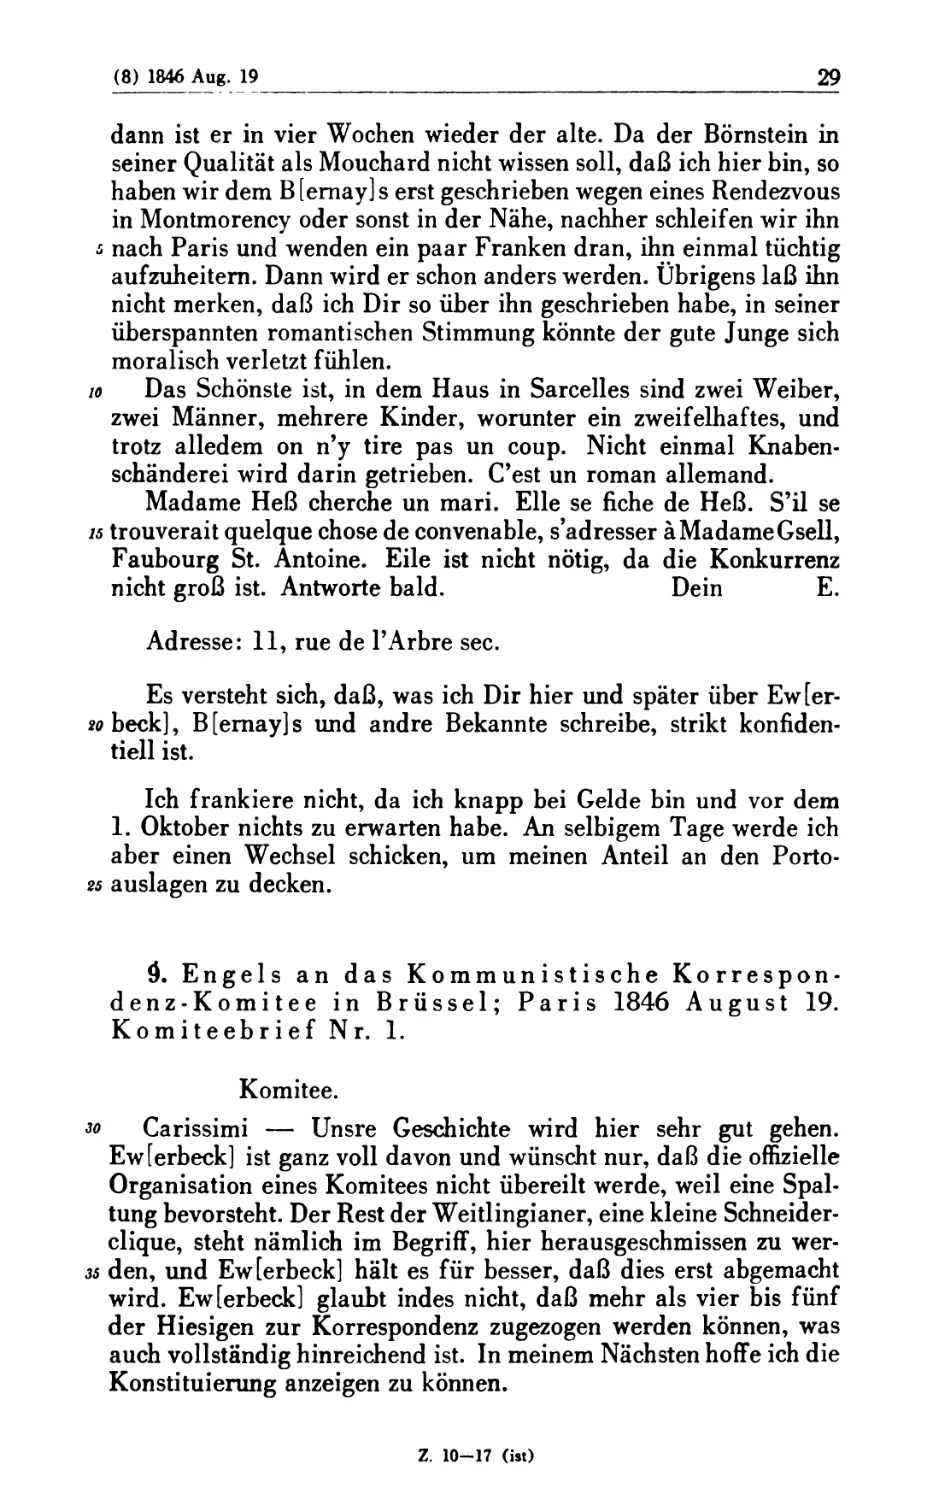 9. Engels an das Kommunistische Korrespondenz-Komitee in Brüssel; Paris 1846 August 19. Komiteebrief Nr. 1